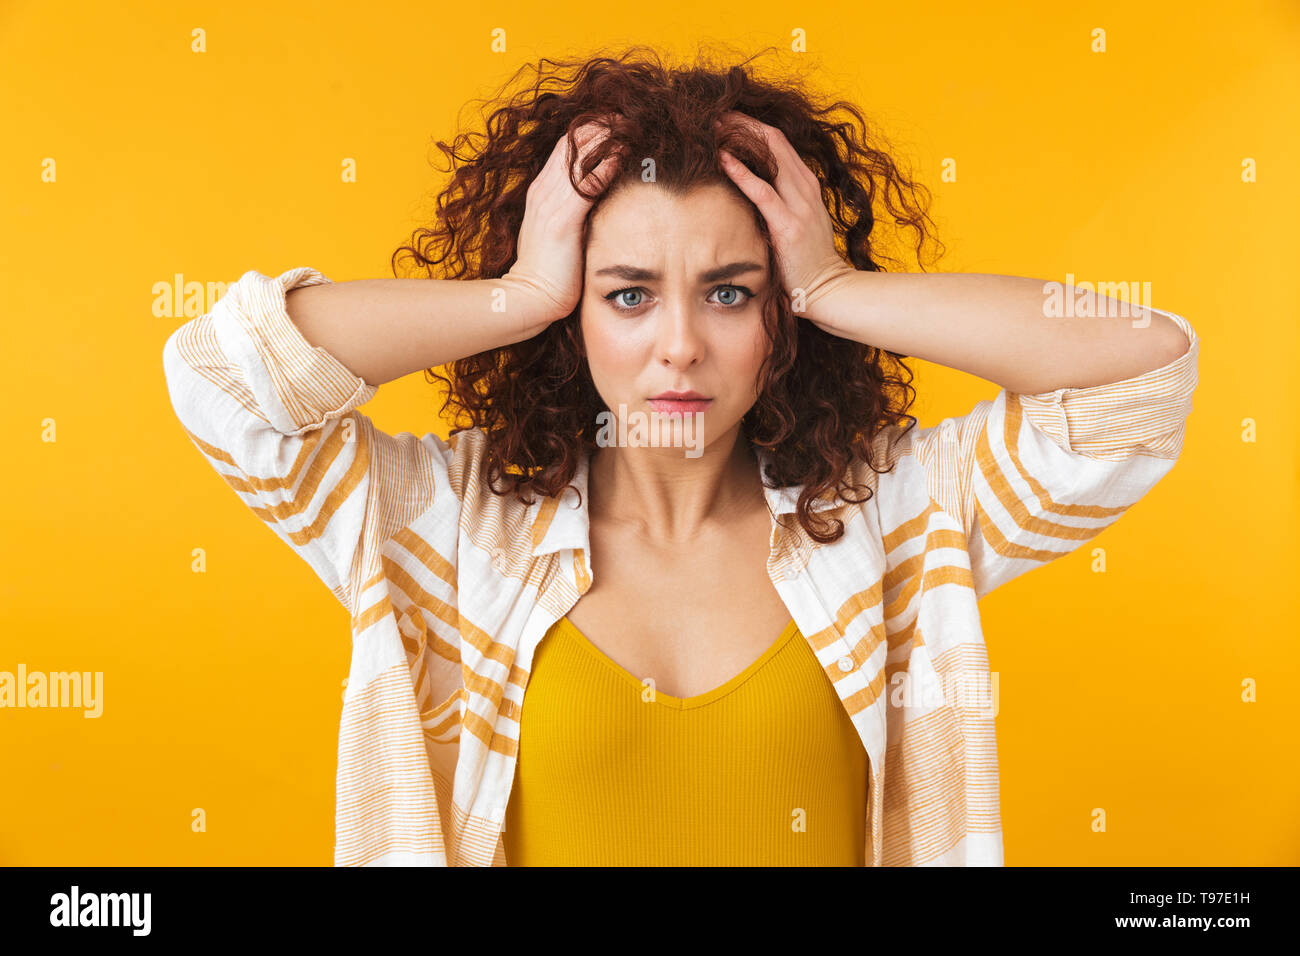 Image de femme tendue 20s avec des cheveux bouclés saisissant sa tête, isolé sur fond jaune Banque D'Images